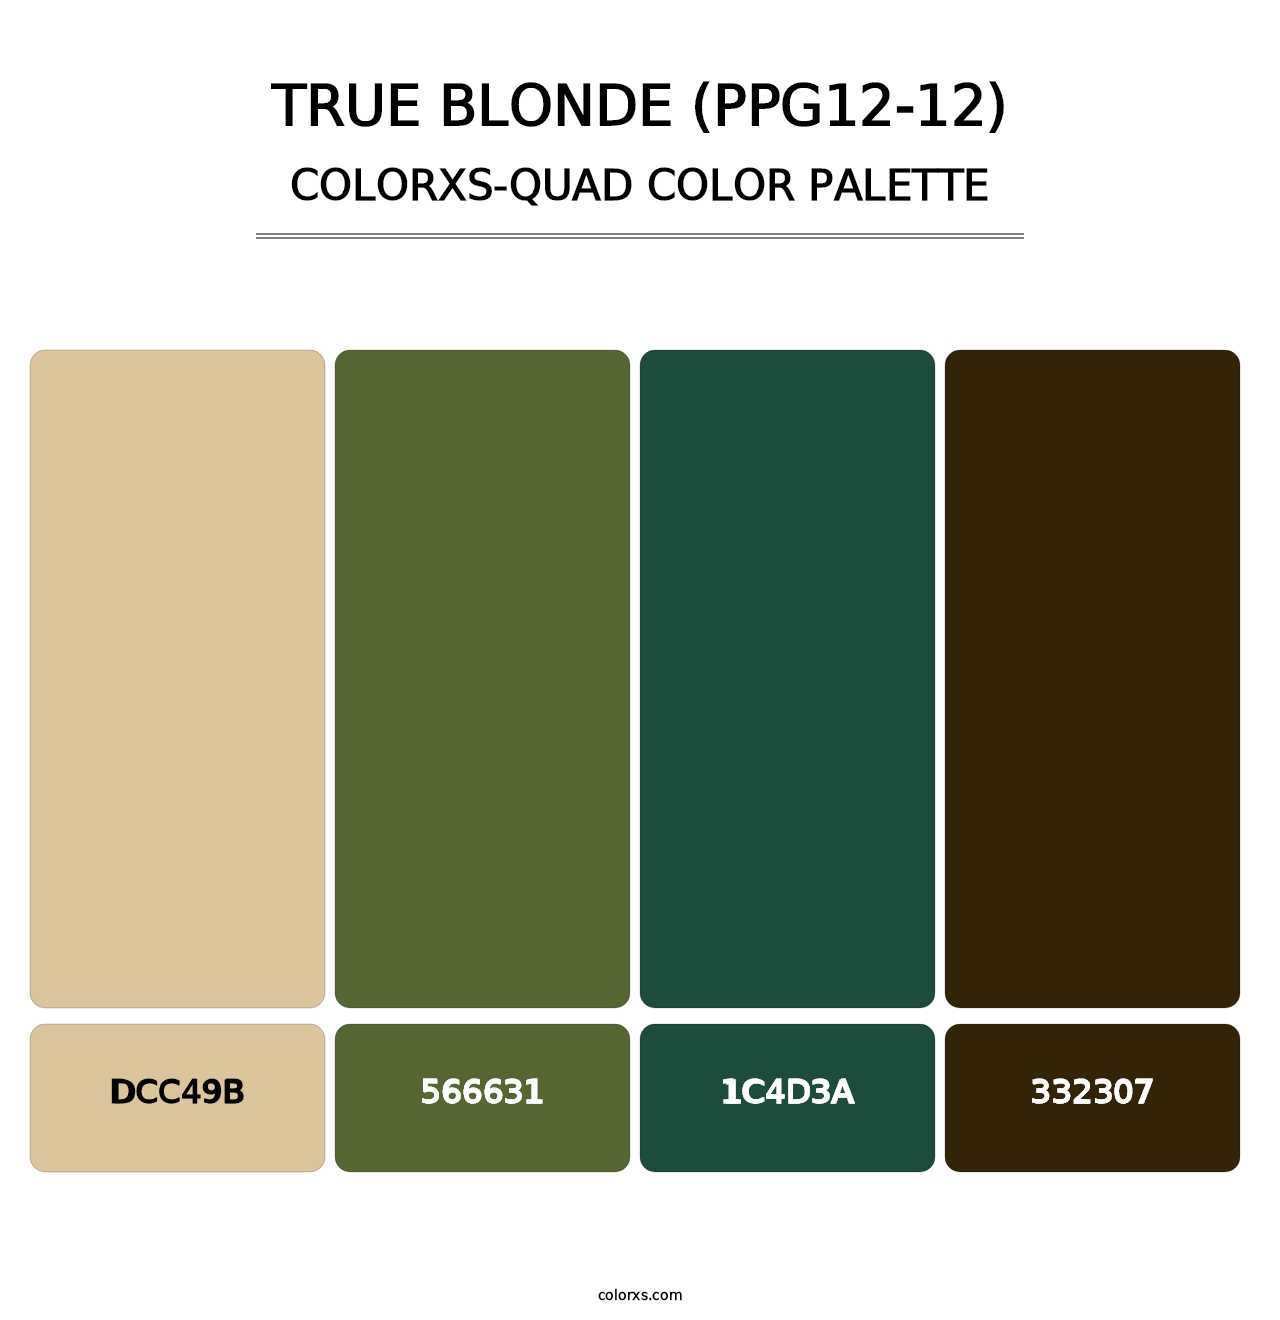 True Blonde (PPG12-12) - Colorxs Quad Palette